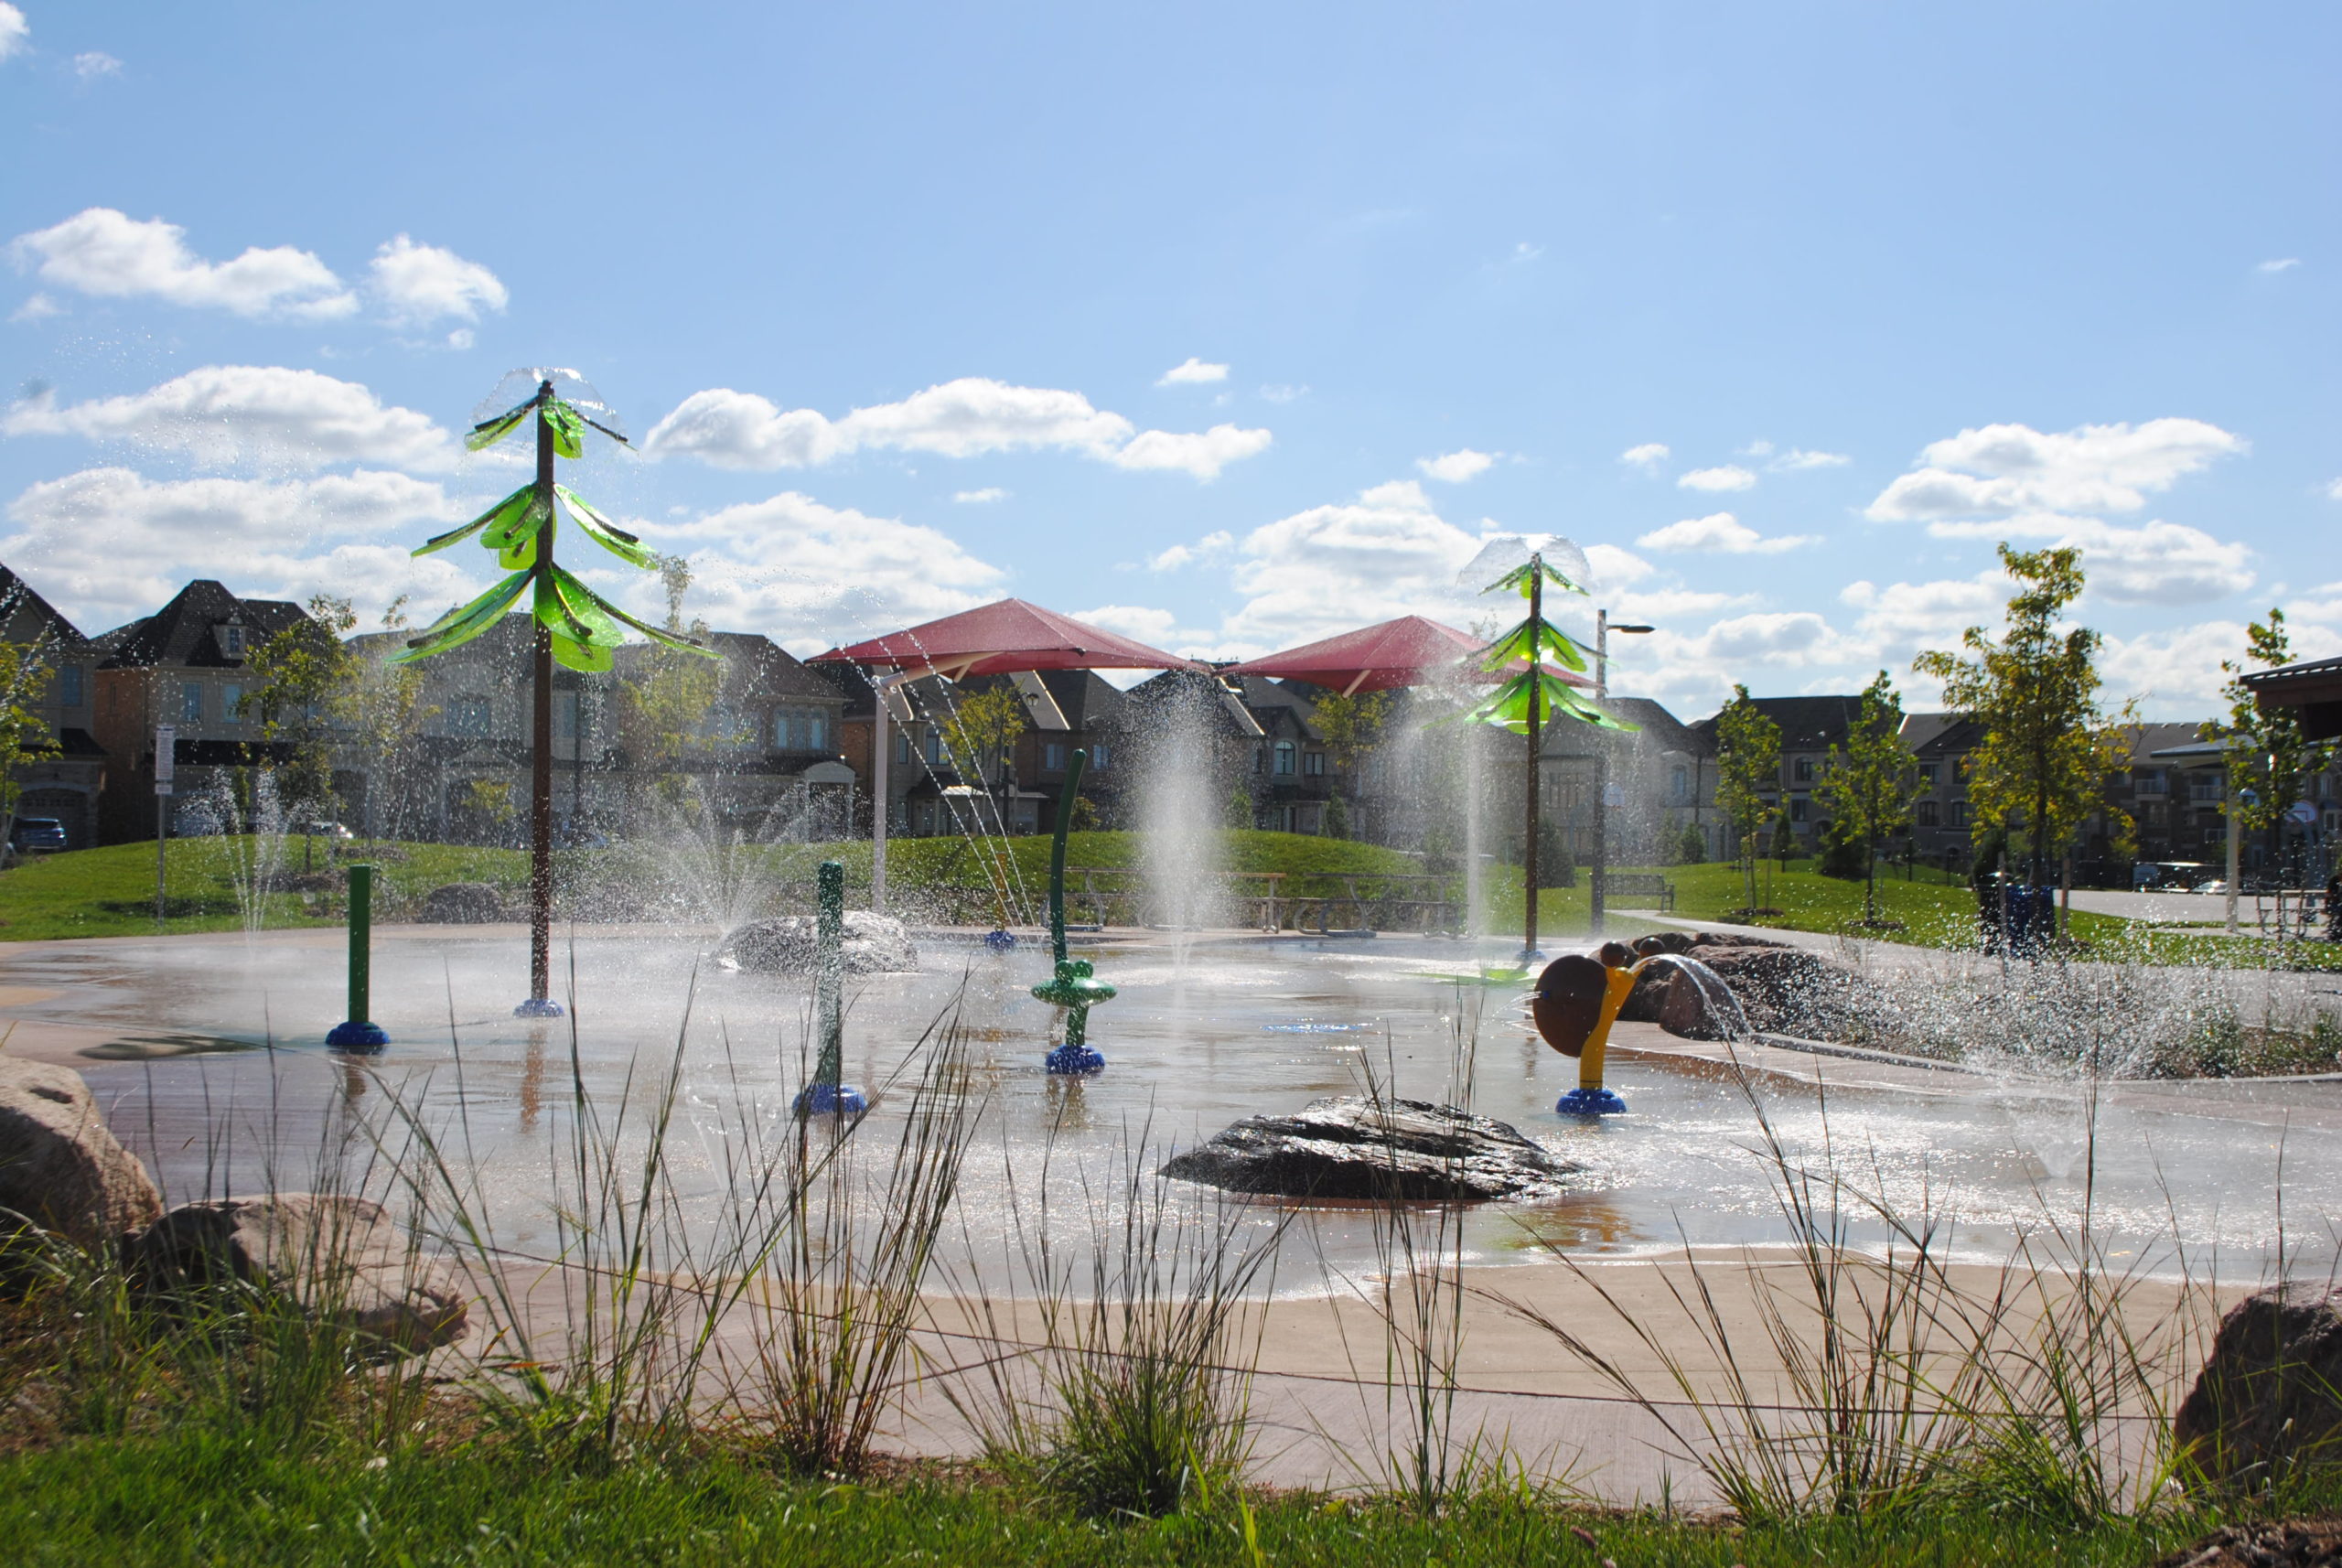 Children's water park.